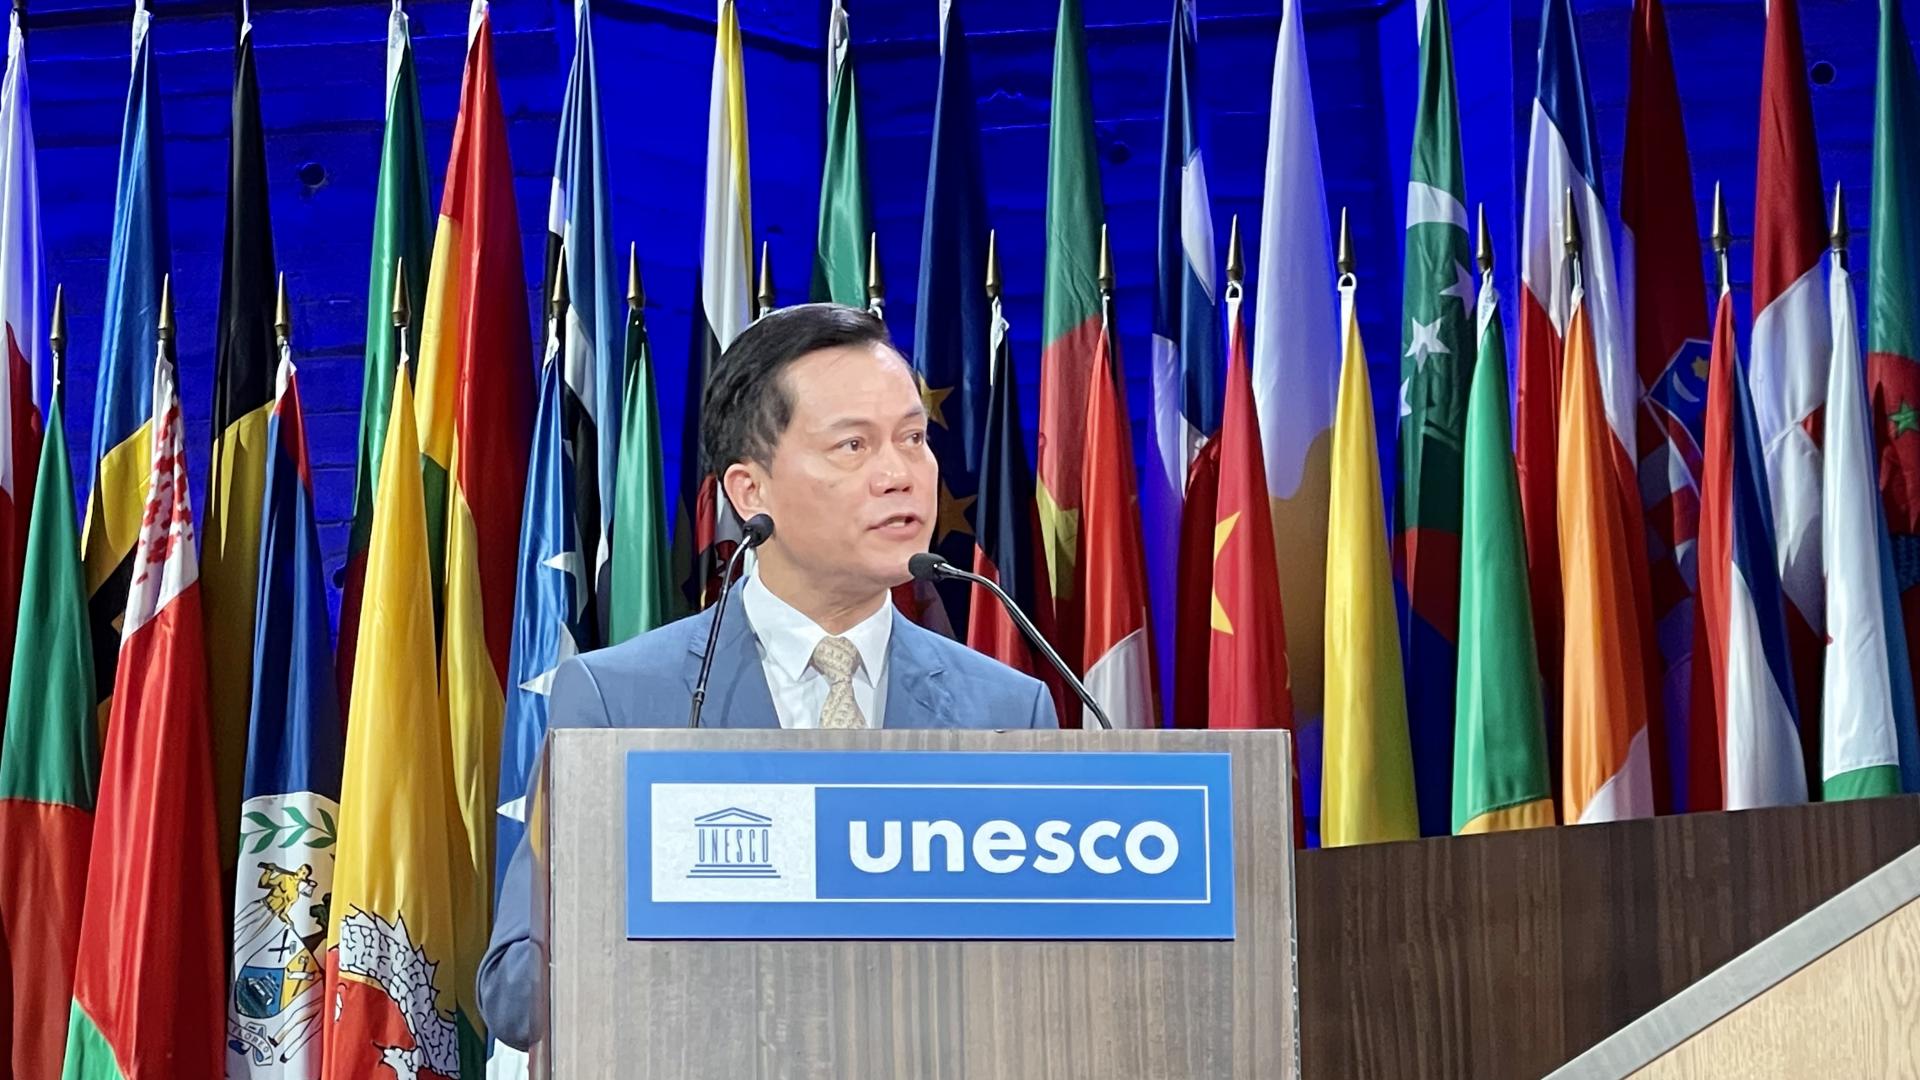 Thứ trưởng Ngoại giao Hà Kim Ngọc, Chủ tịch Ủy ban quốc gia UNESCO Việt Nam phát biểu tại phiên toàn thể kỳ họp lần thứ 42 Đại hội đồng Tổ chức Giáo dục, Khoa học và Văn hóa của Liên hợp quốc (UNESCO) ở thủ đô Paris từ 11 - 22/11.